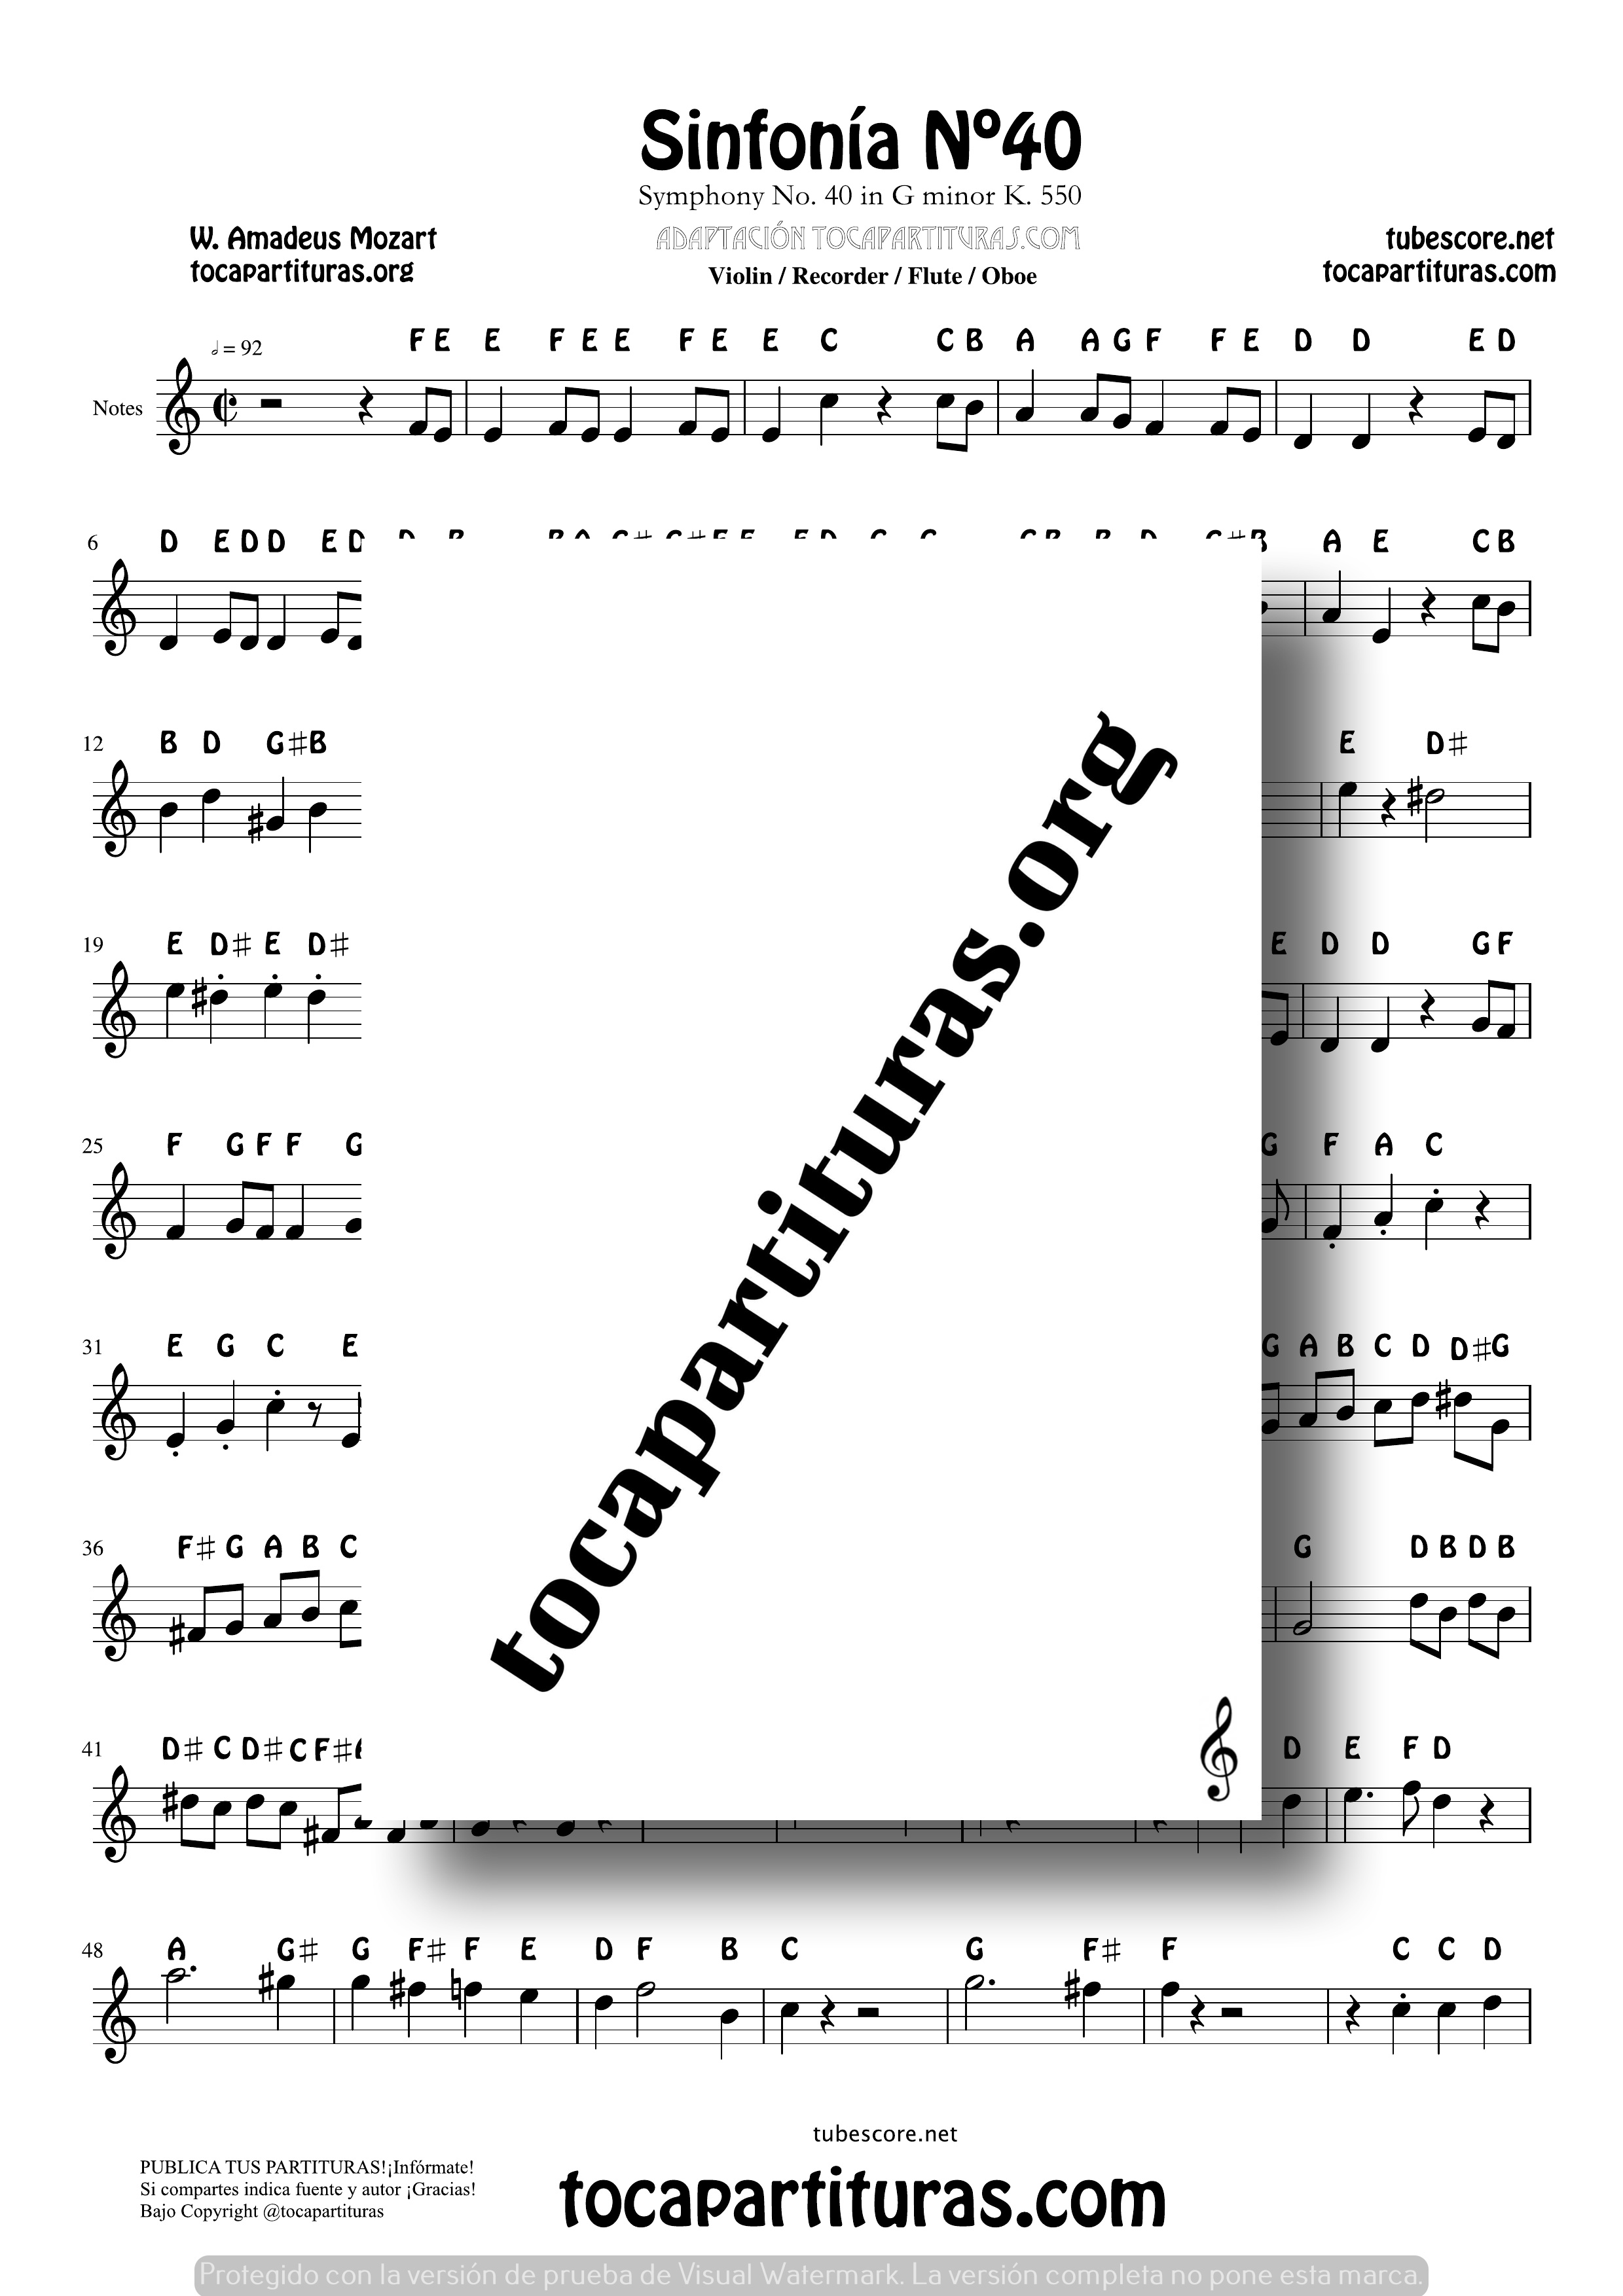 Sinfonía n.º 40 (Mozart) Easy Notes Sheet Music for Treble Clef (Violín, Oboe, Flute, Recorder…)